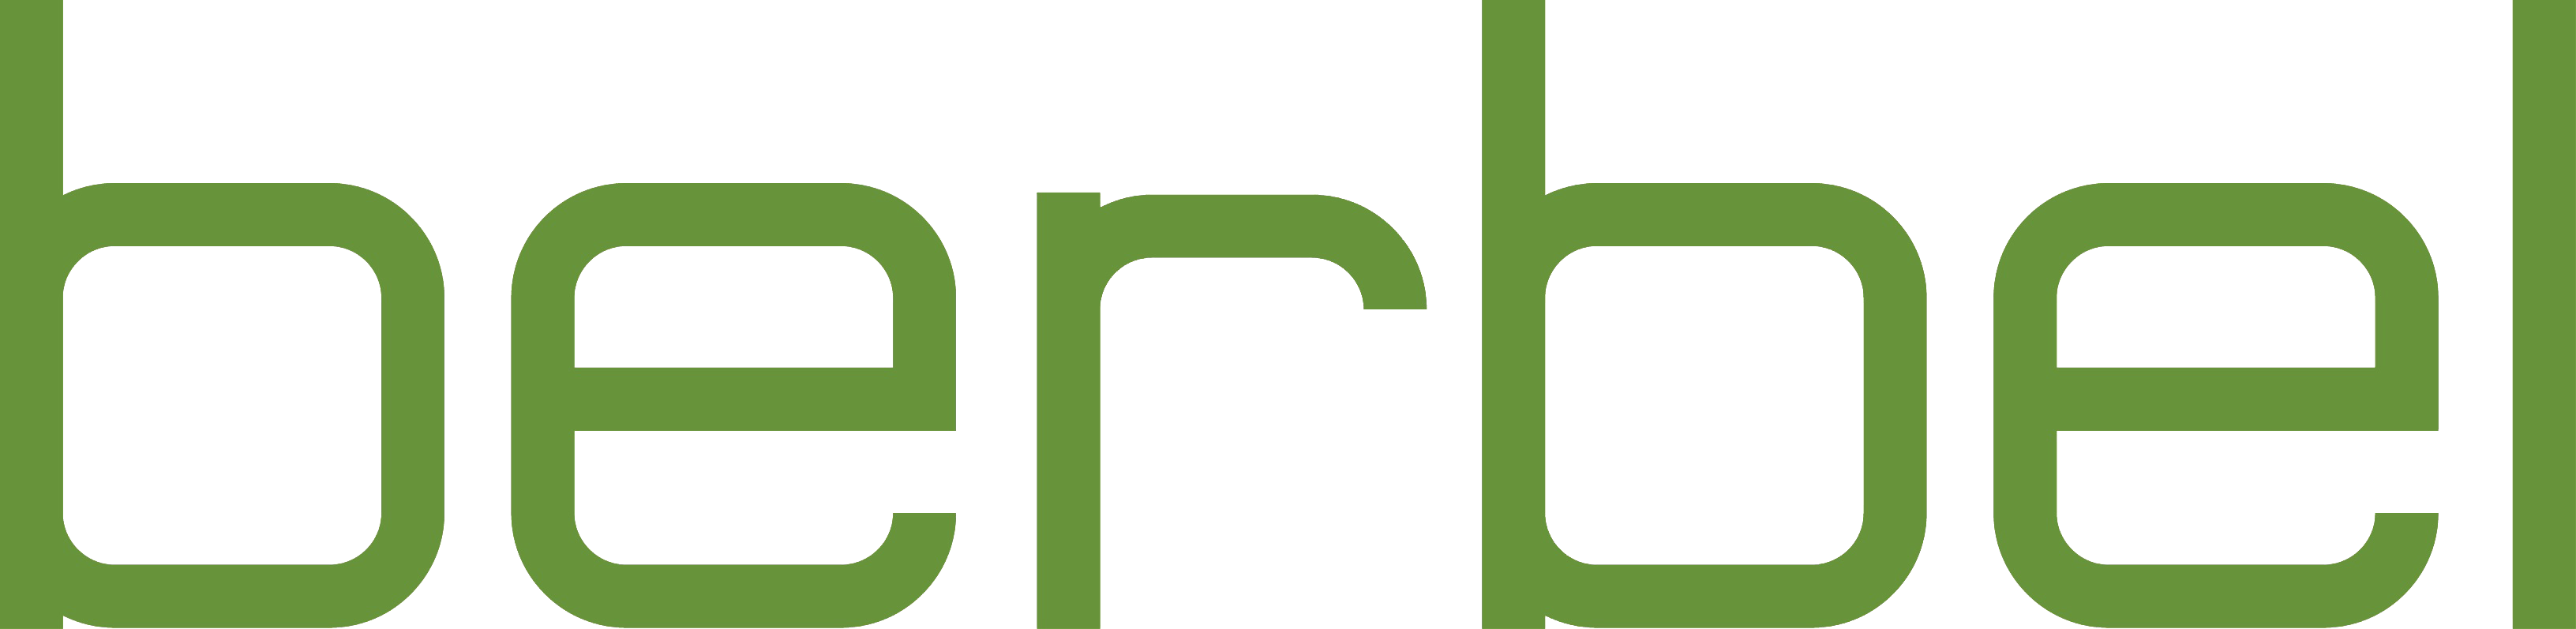 logo_berbel png